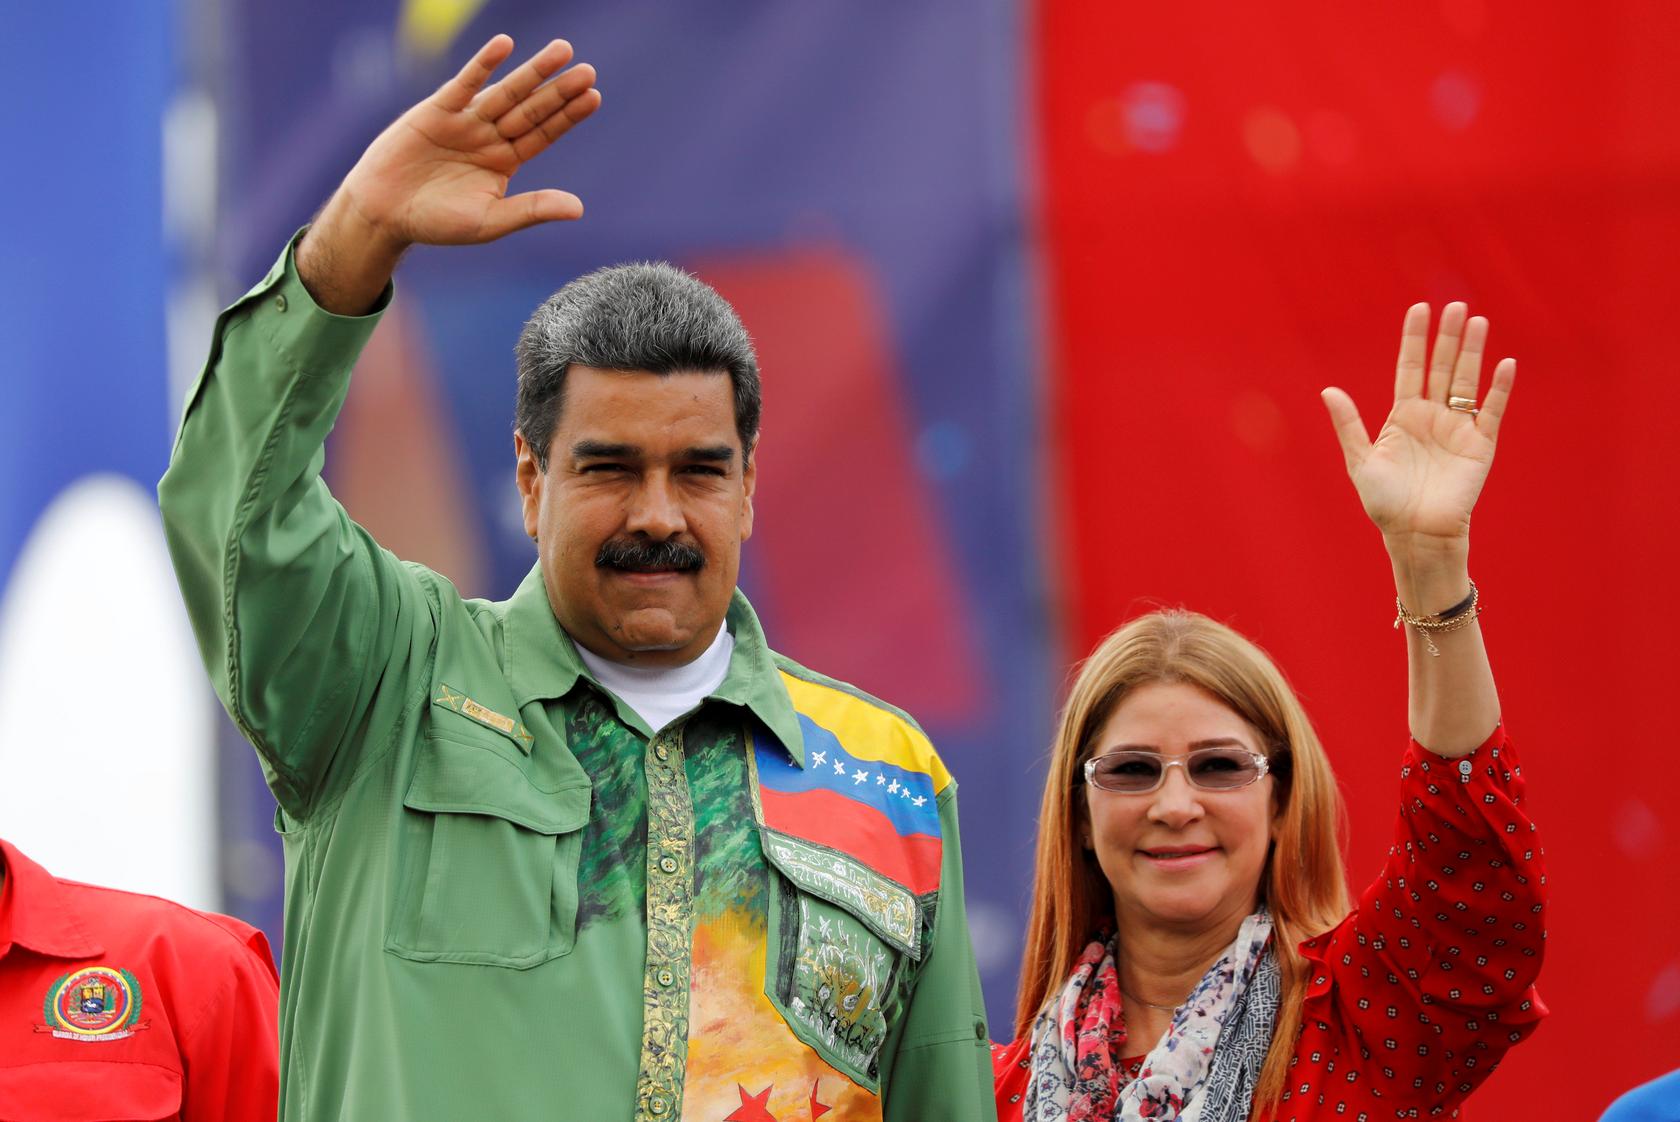 El presidente Maduro tomará vacaciones decembrinas por 15 días